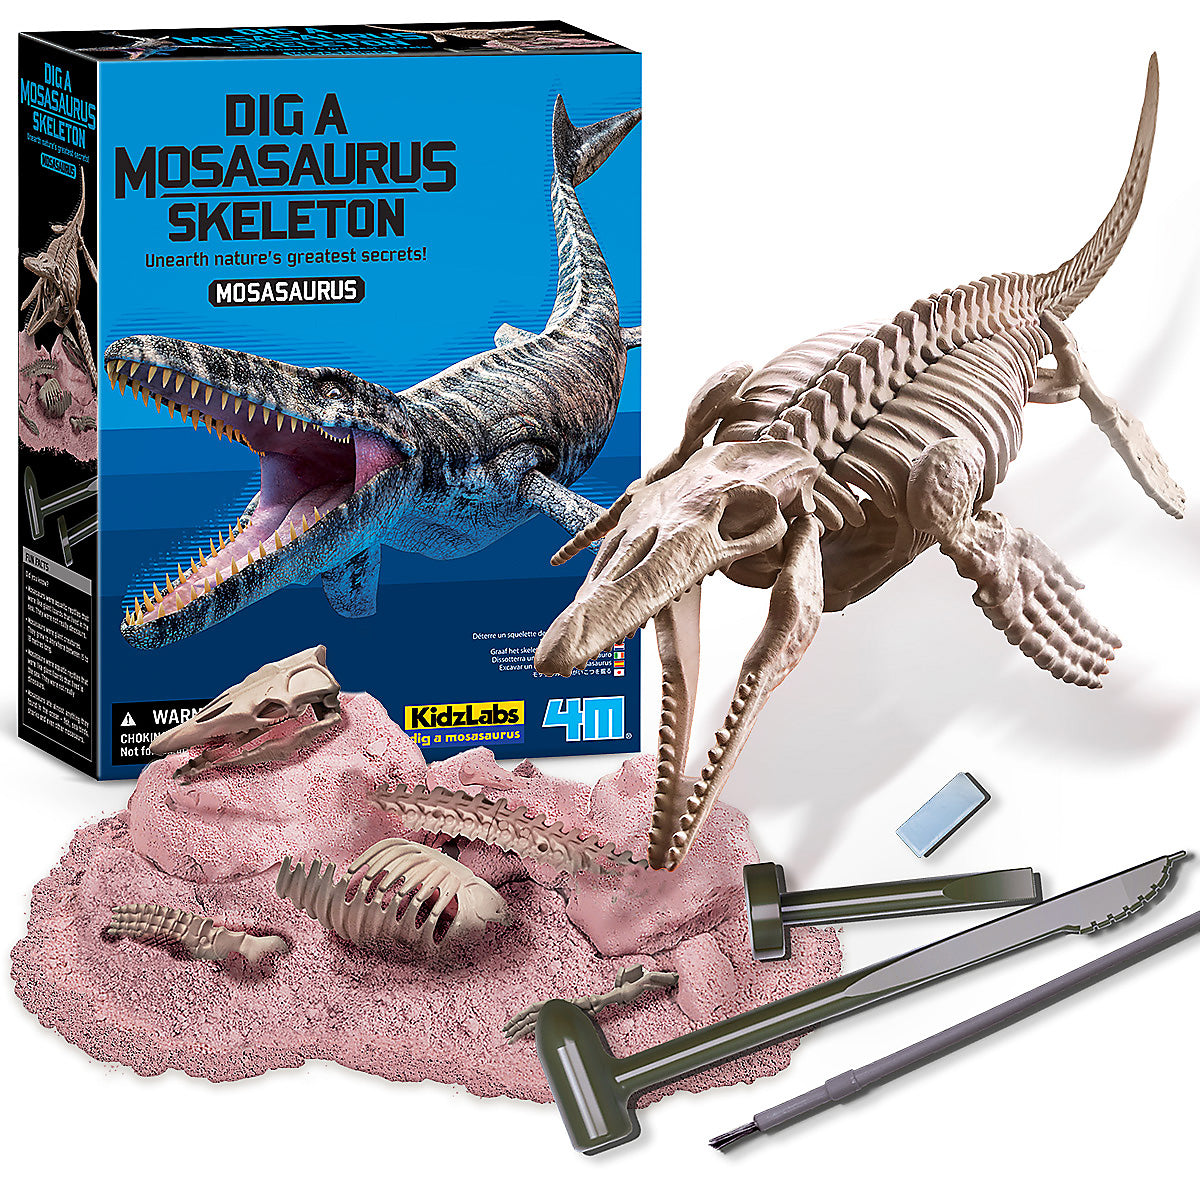 Kidz Labs - Déterre un Squelette de Dino-Triceratops